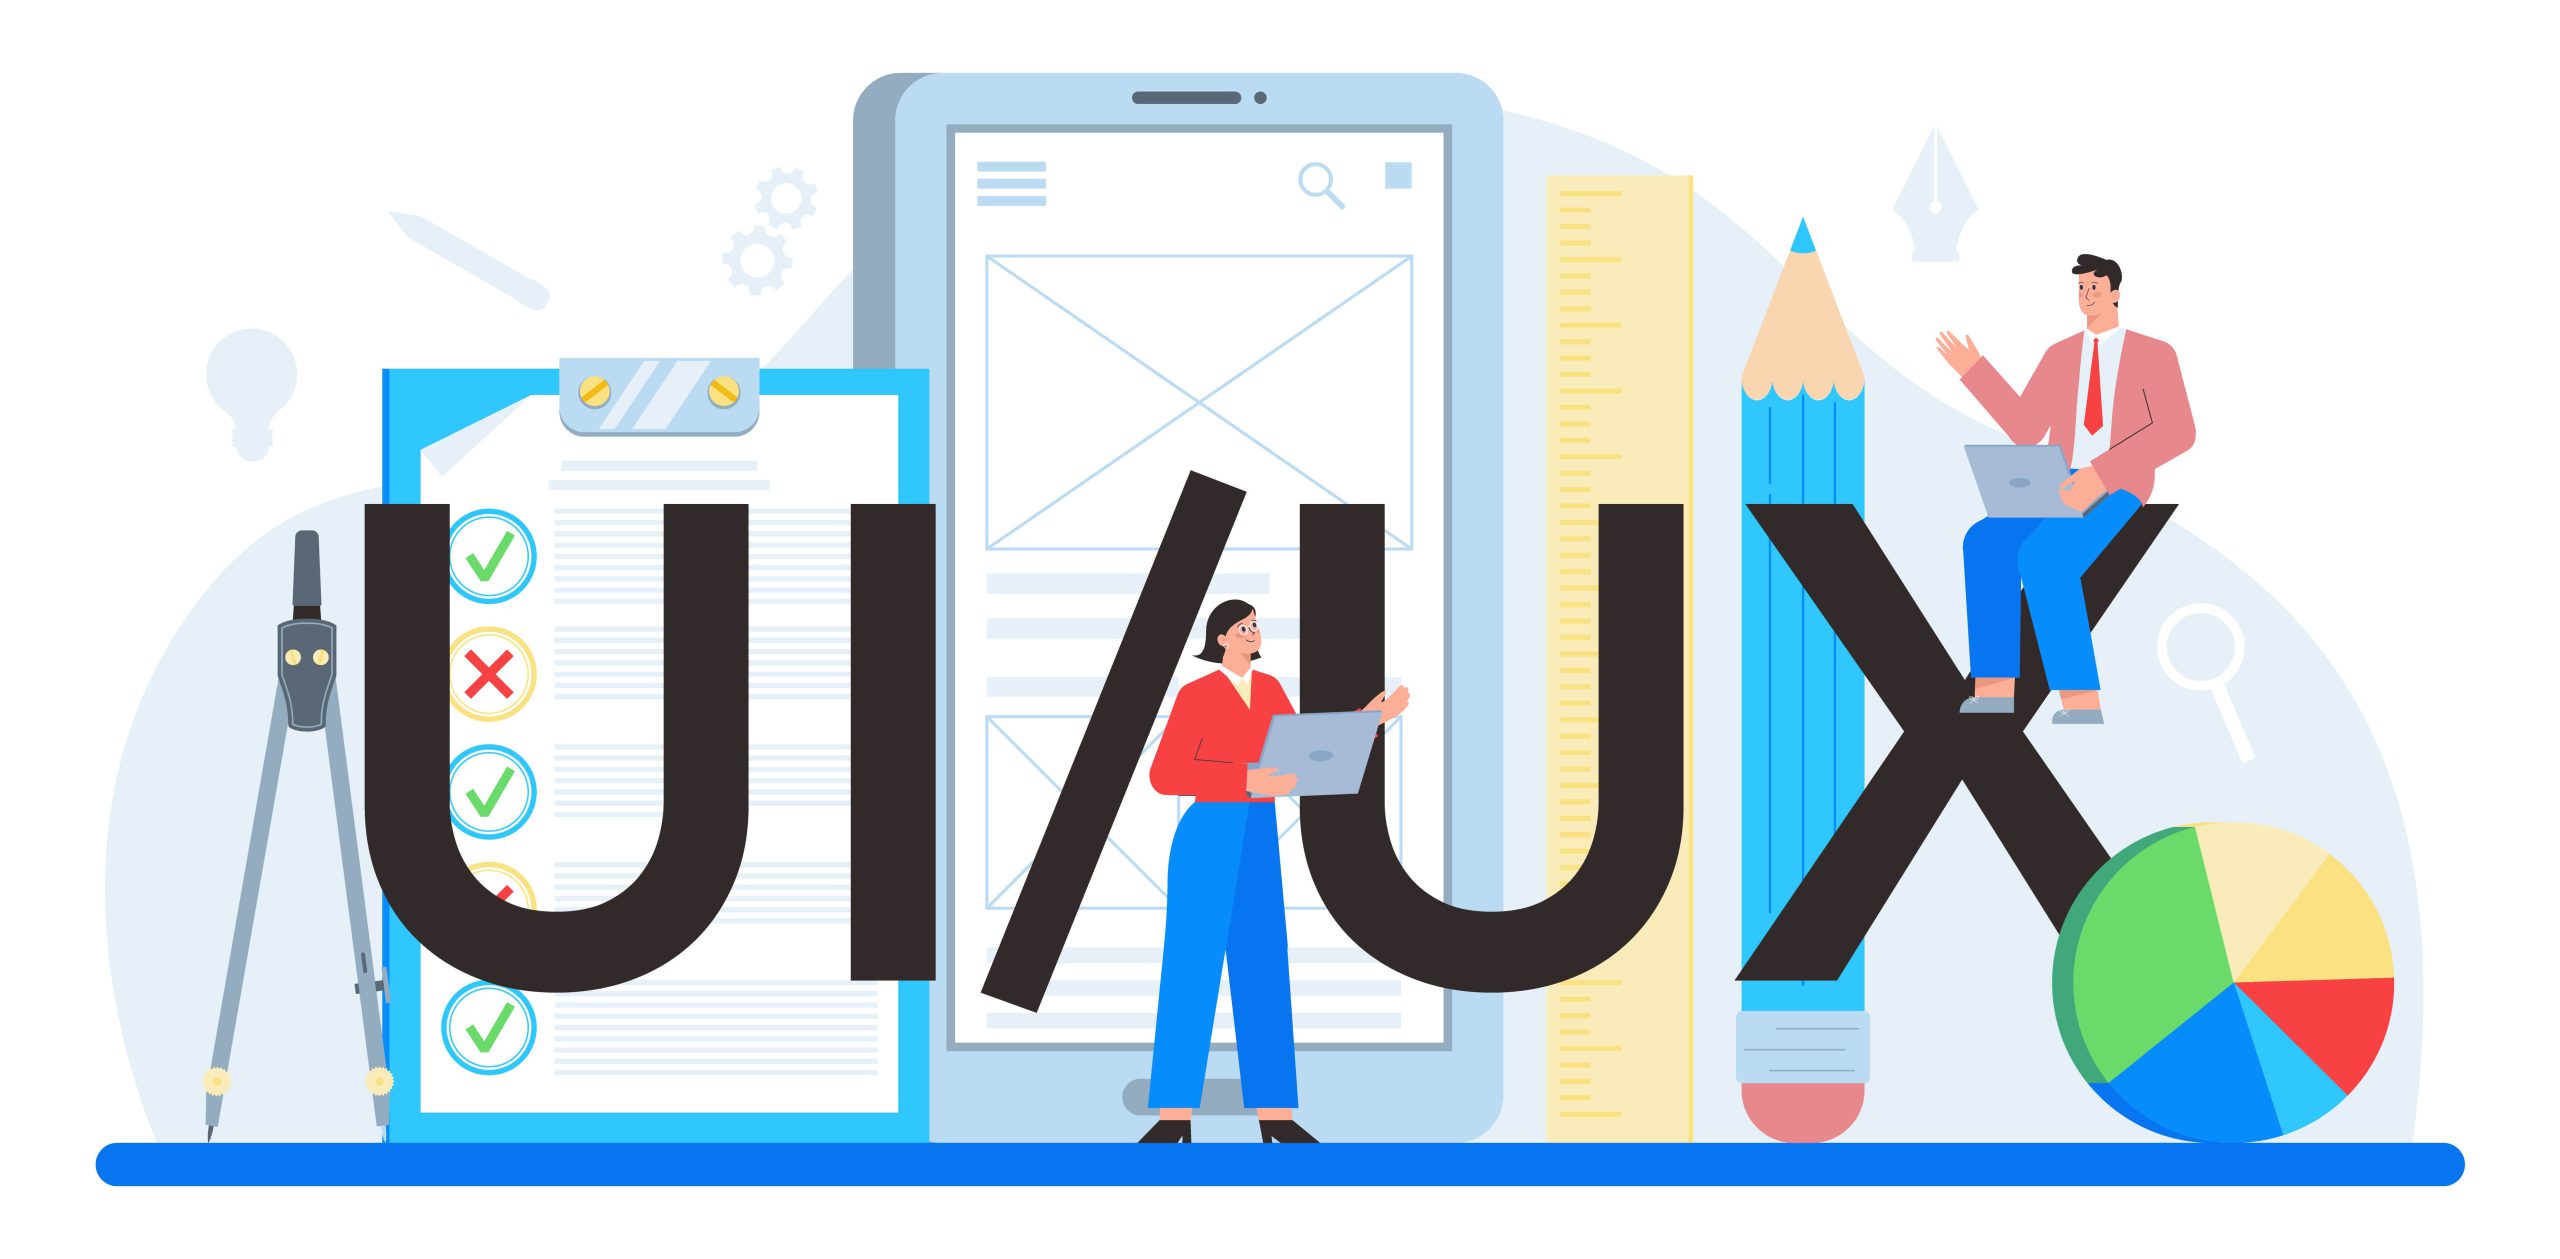 در طراحی سایت امروزه طراحی ui & ux  از مباحث مهم در نحوه طراحی سایت میباشد. این دو واژه معمولا در کنار هم به کار میروند.